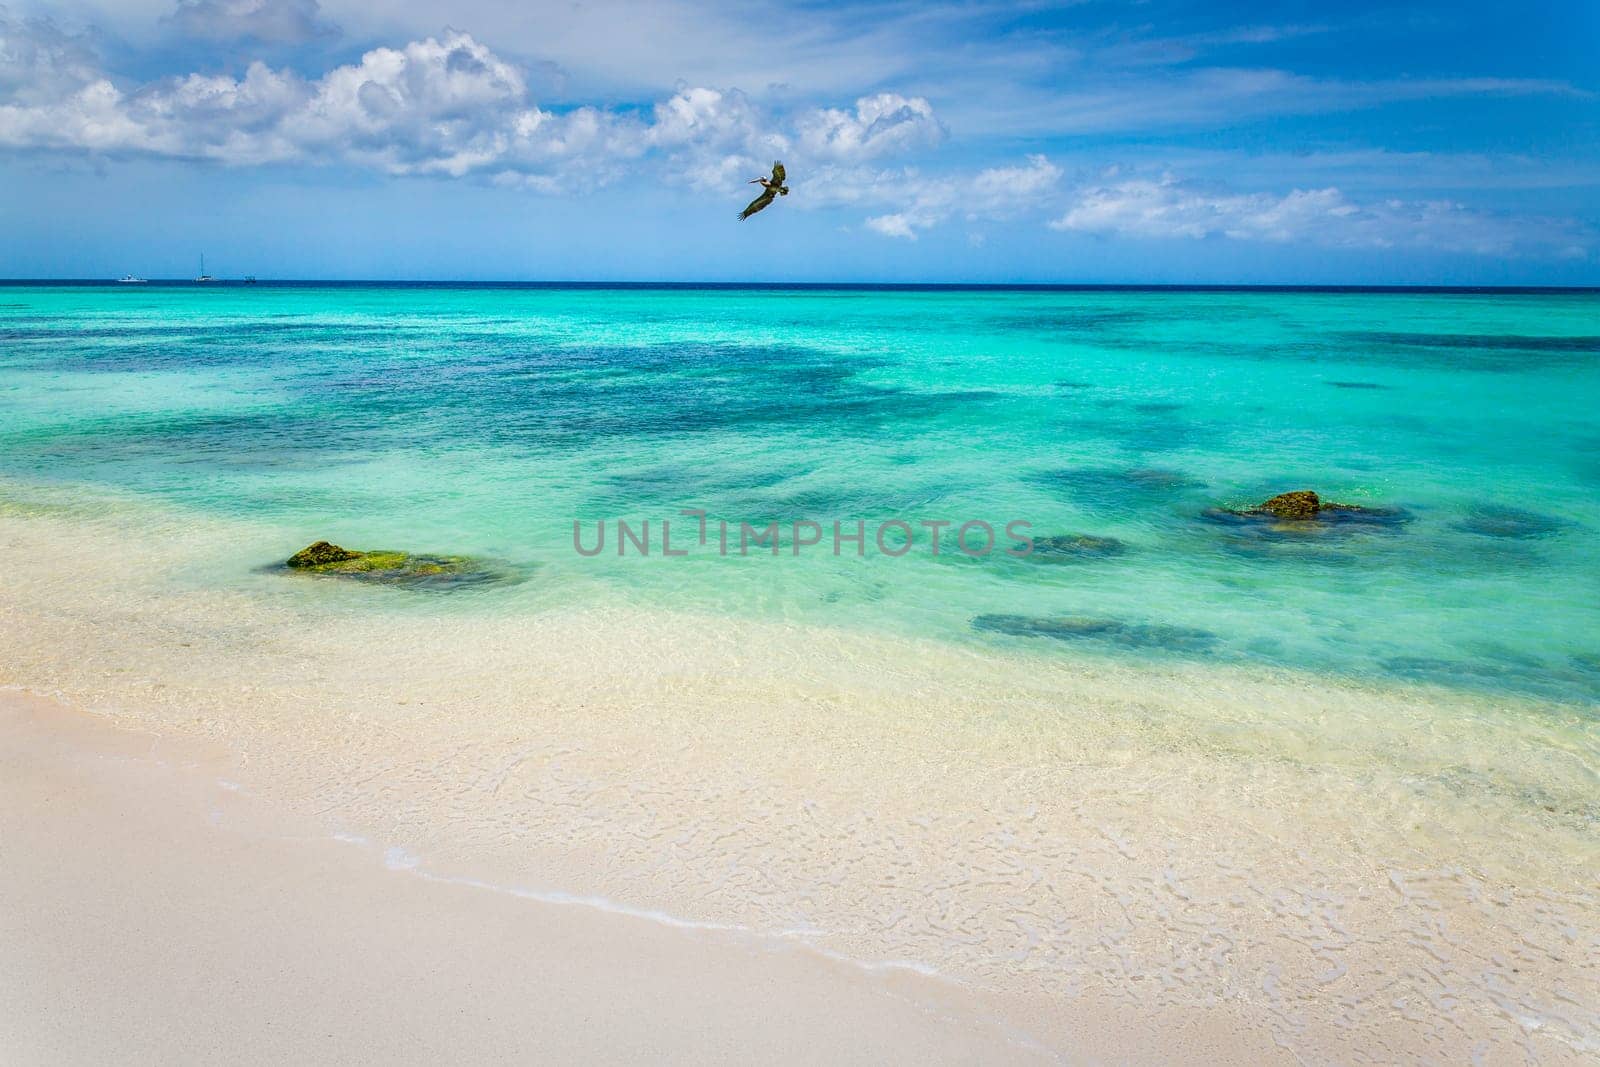 Pelican over Arashi secluded beach on Aruba island, Caribbean sea by positivetravelart